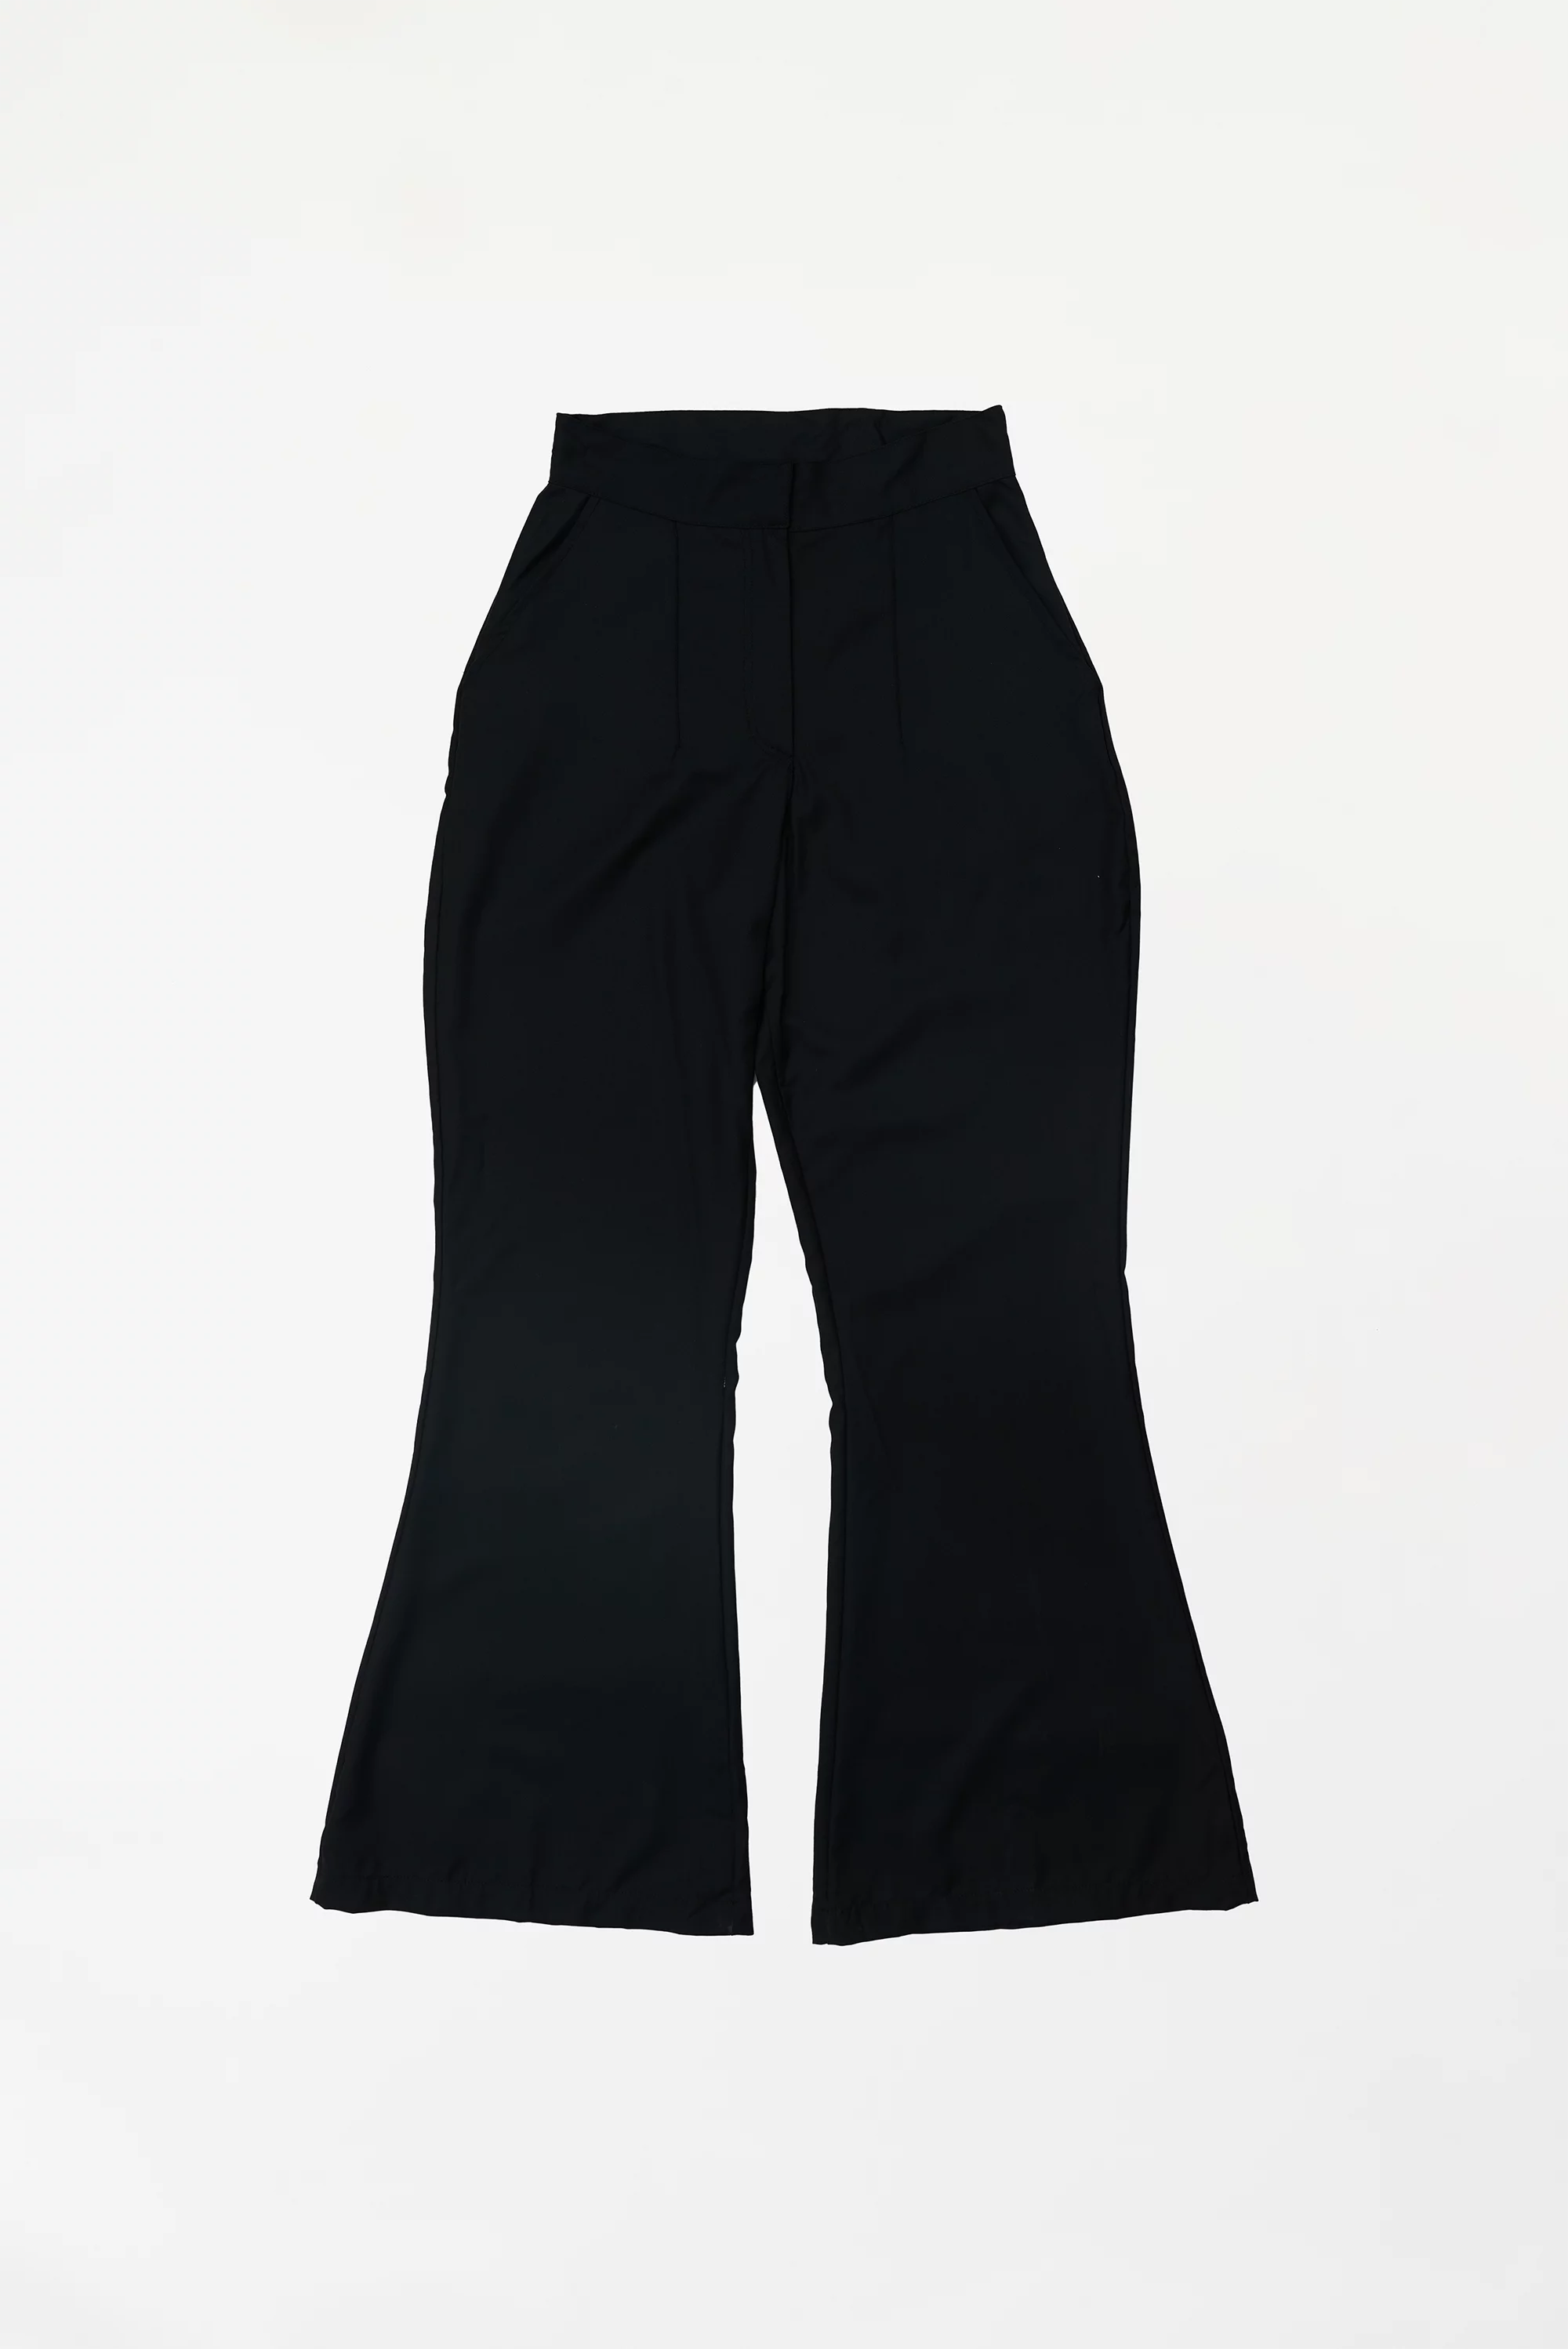 Women's Bell Bottom Pants Black